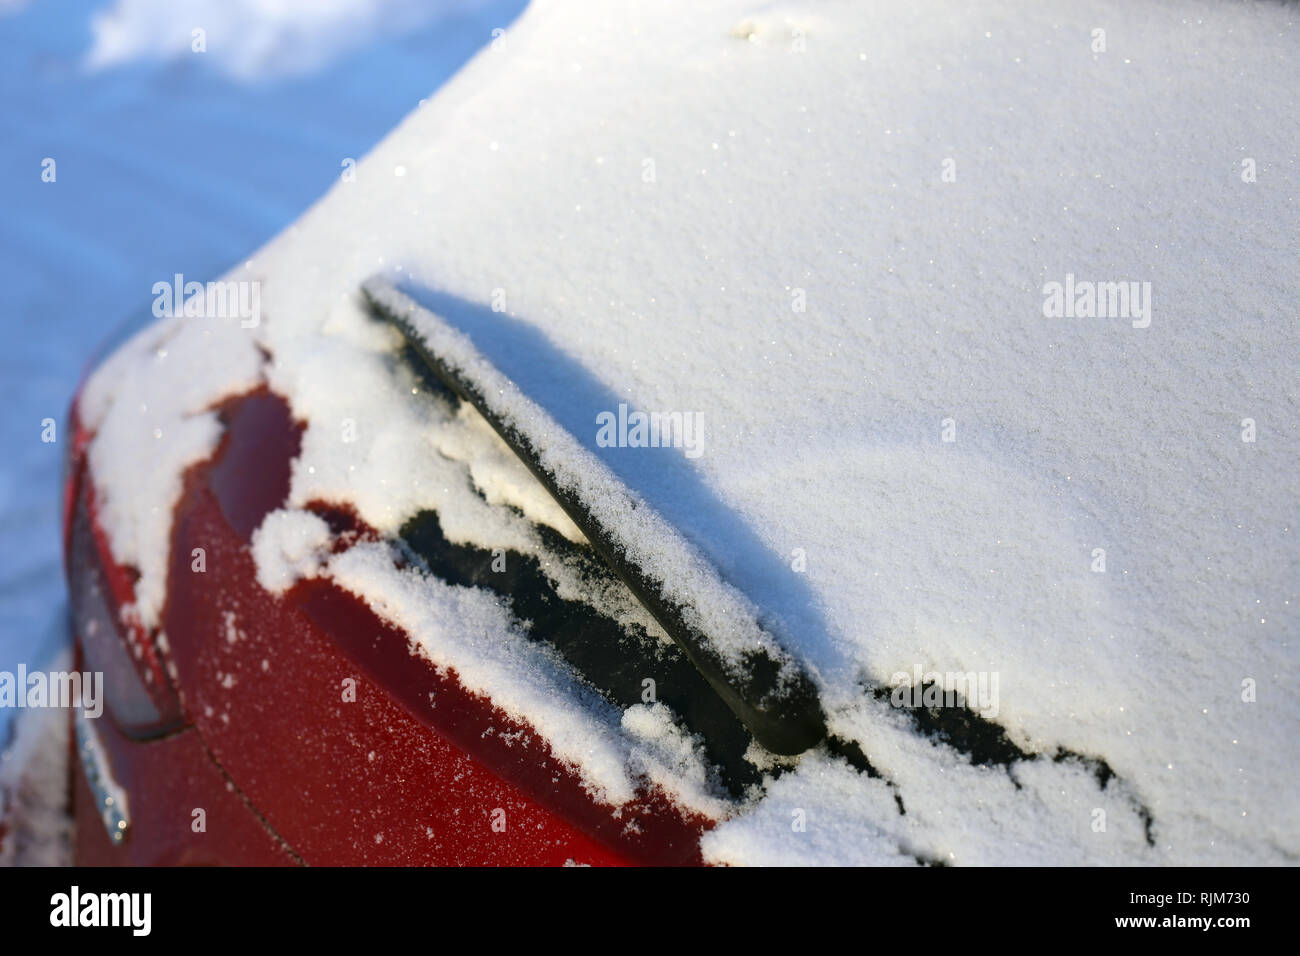 La neige sur le haut de la fenêtre arrière d'une voiture rouge. Photographié de jour durant l'hiver en Finlande. Banque D'Images